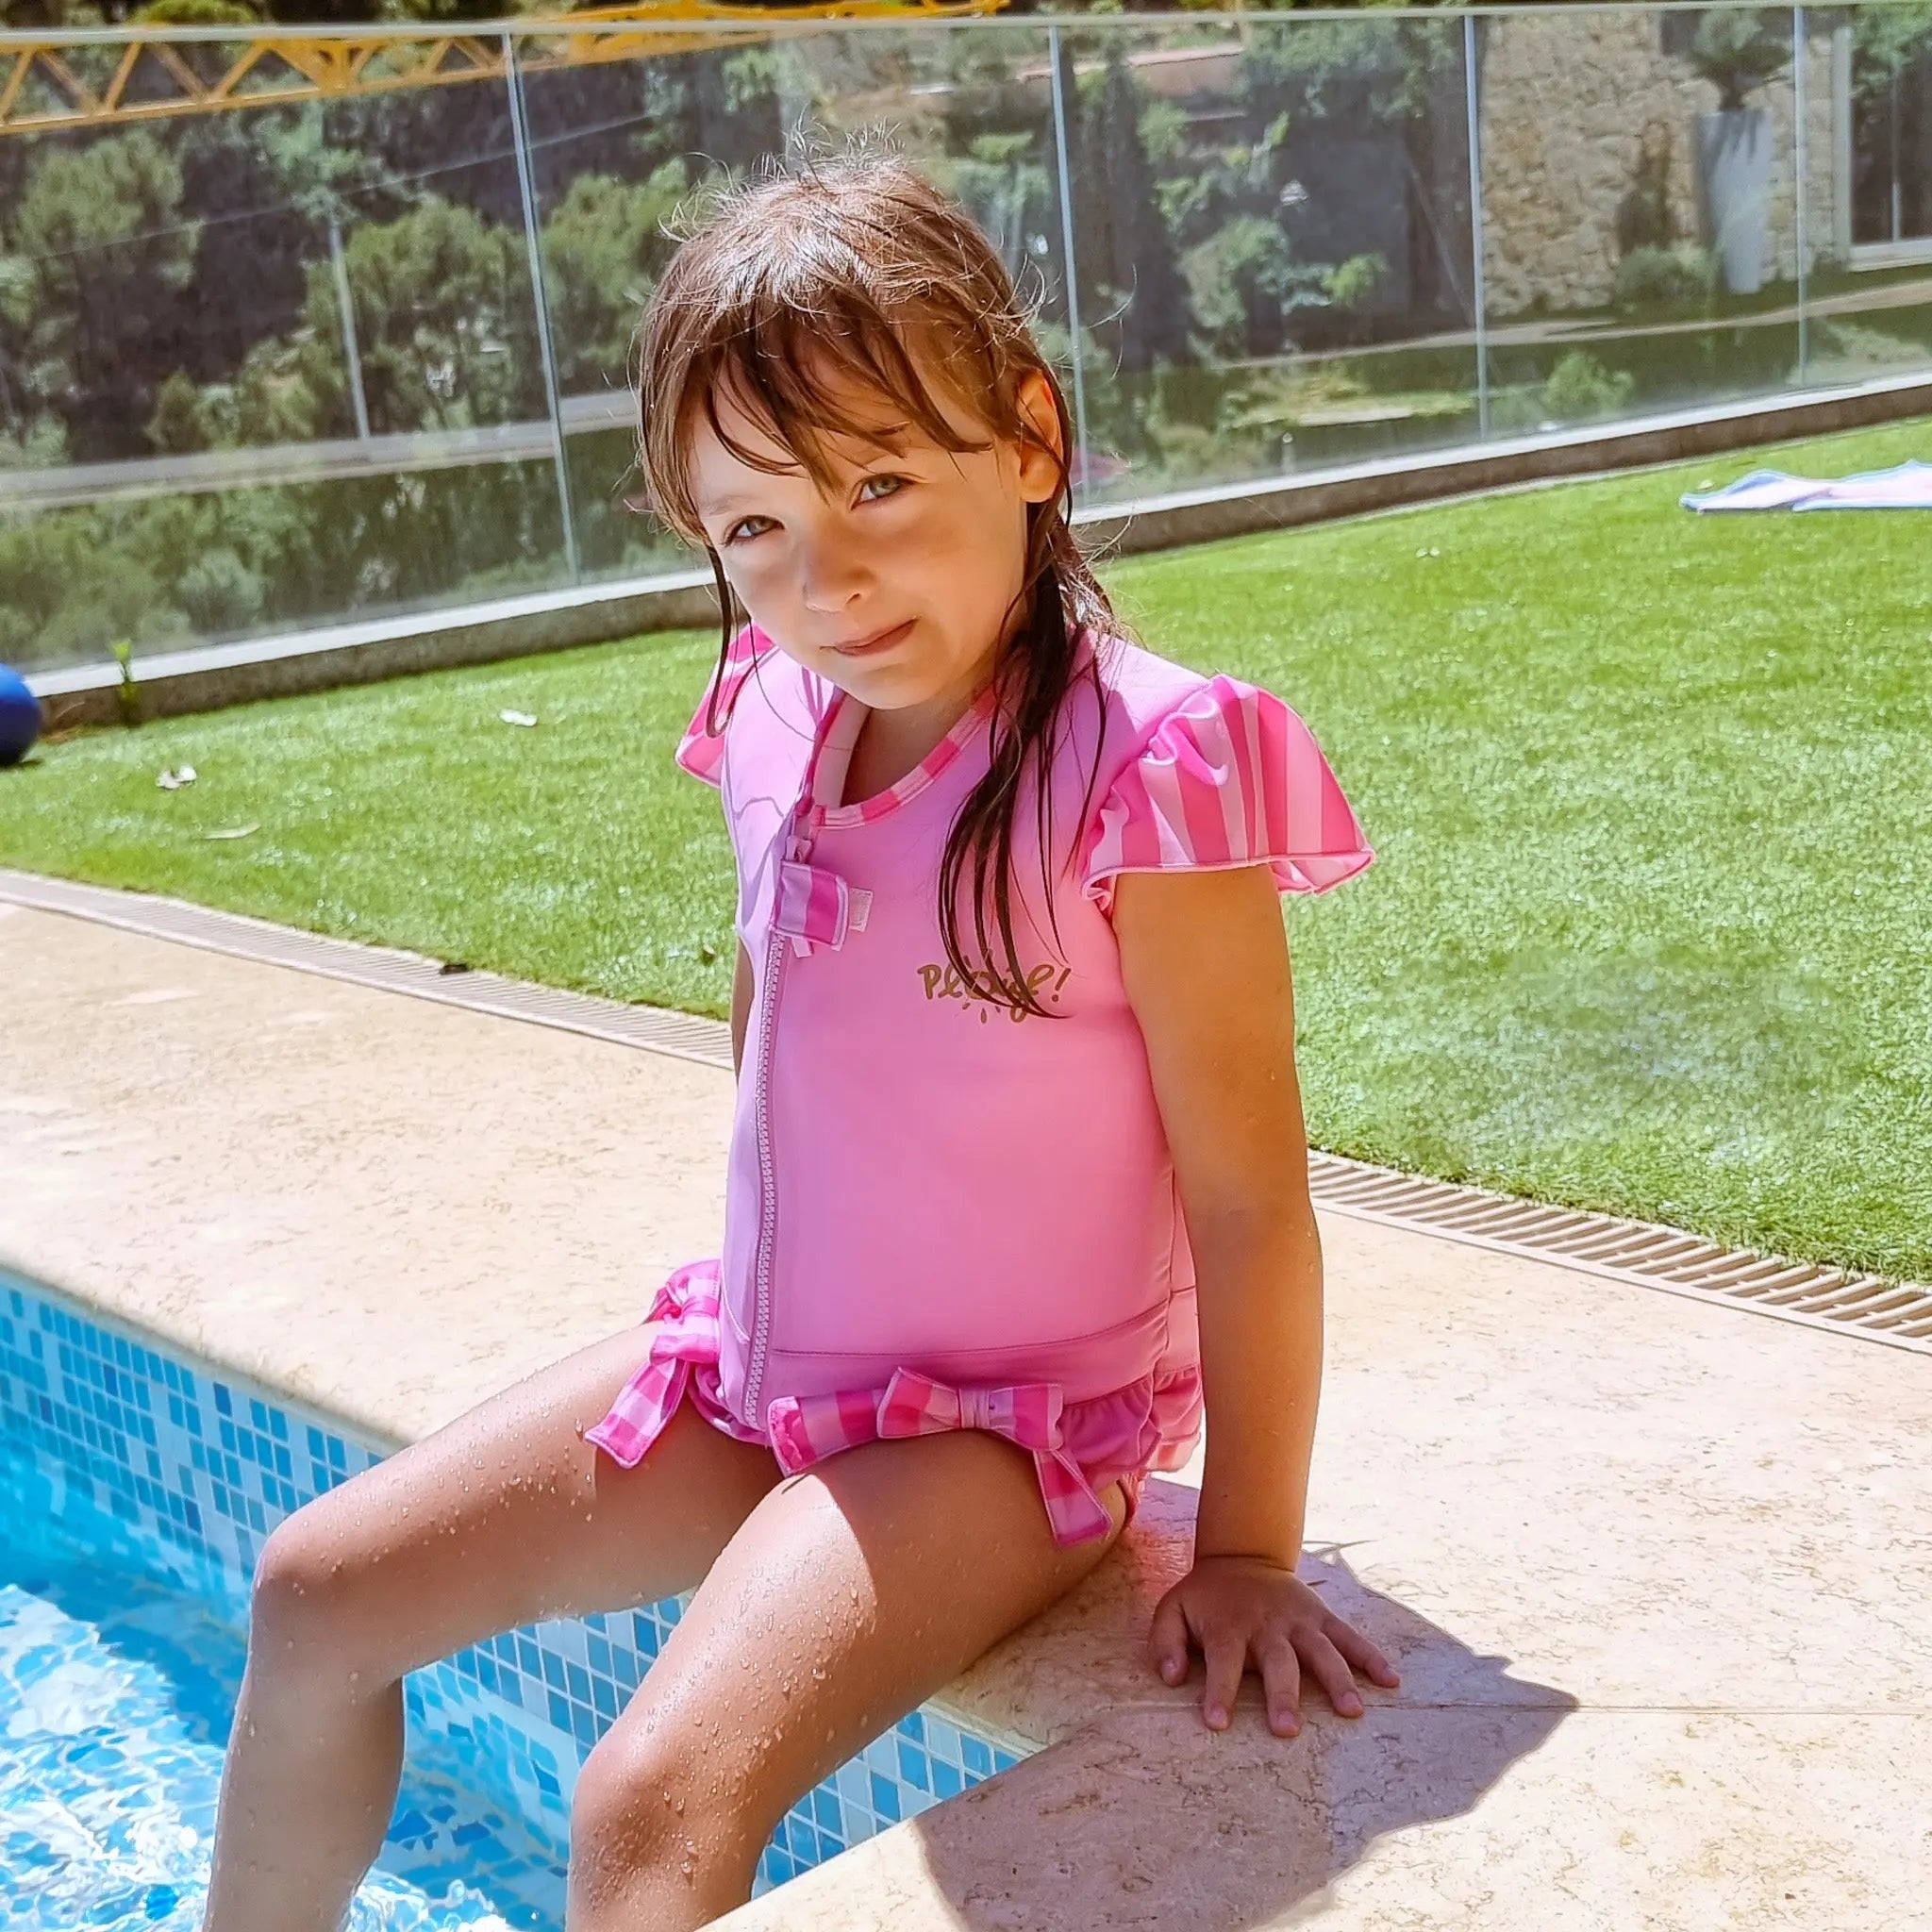 Le maillot de bain sécurité flottant N°1 pour les enfants – Plouf!